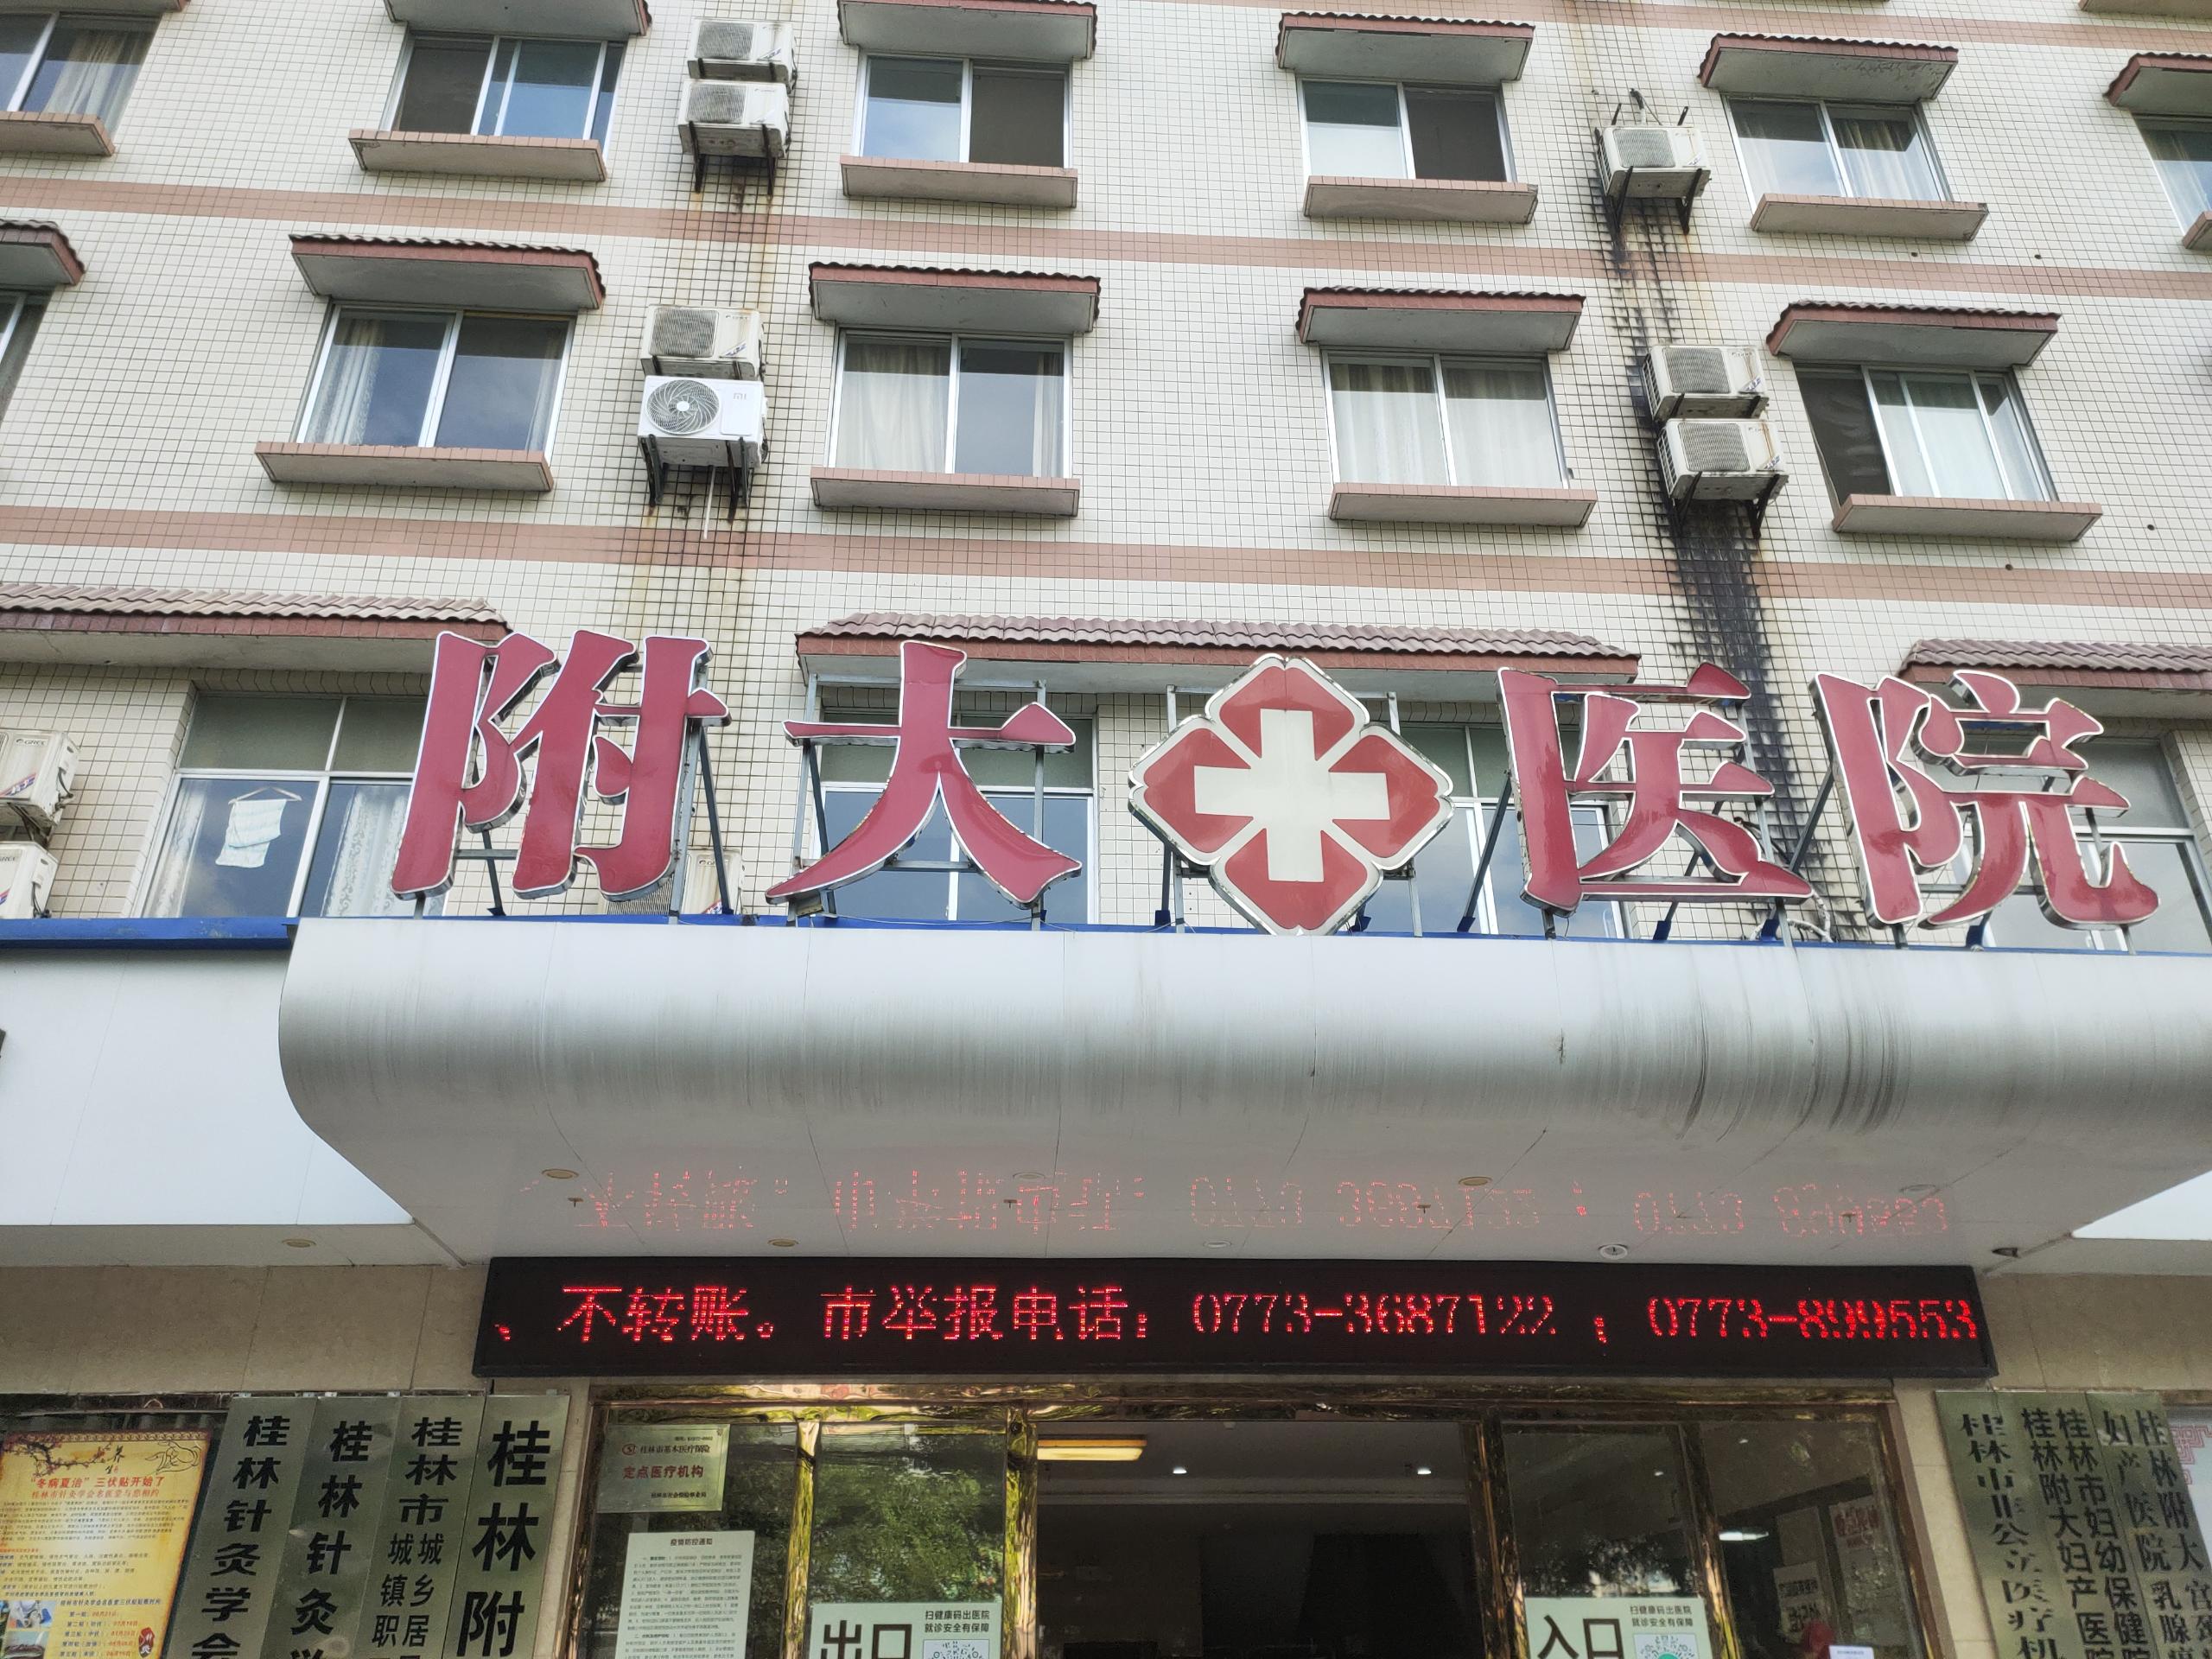 超声波骨密度测量仪被广西壮族自治区桂林附大医院采购博艺堂bo98价格